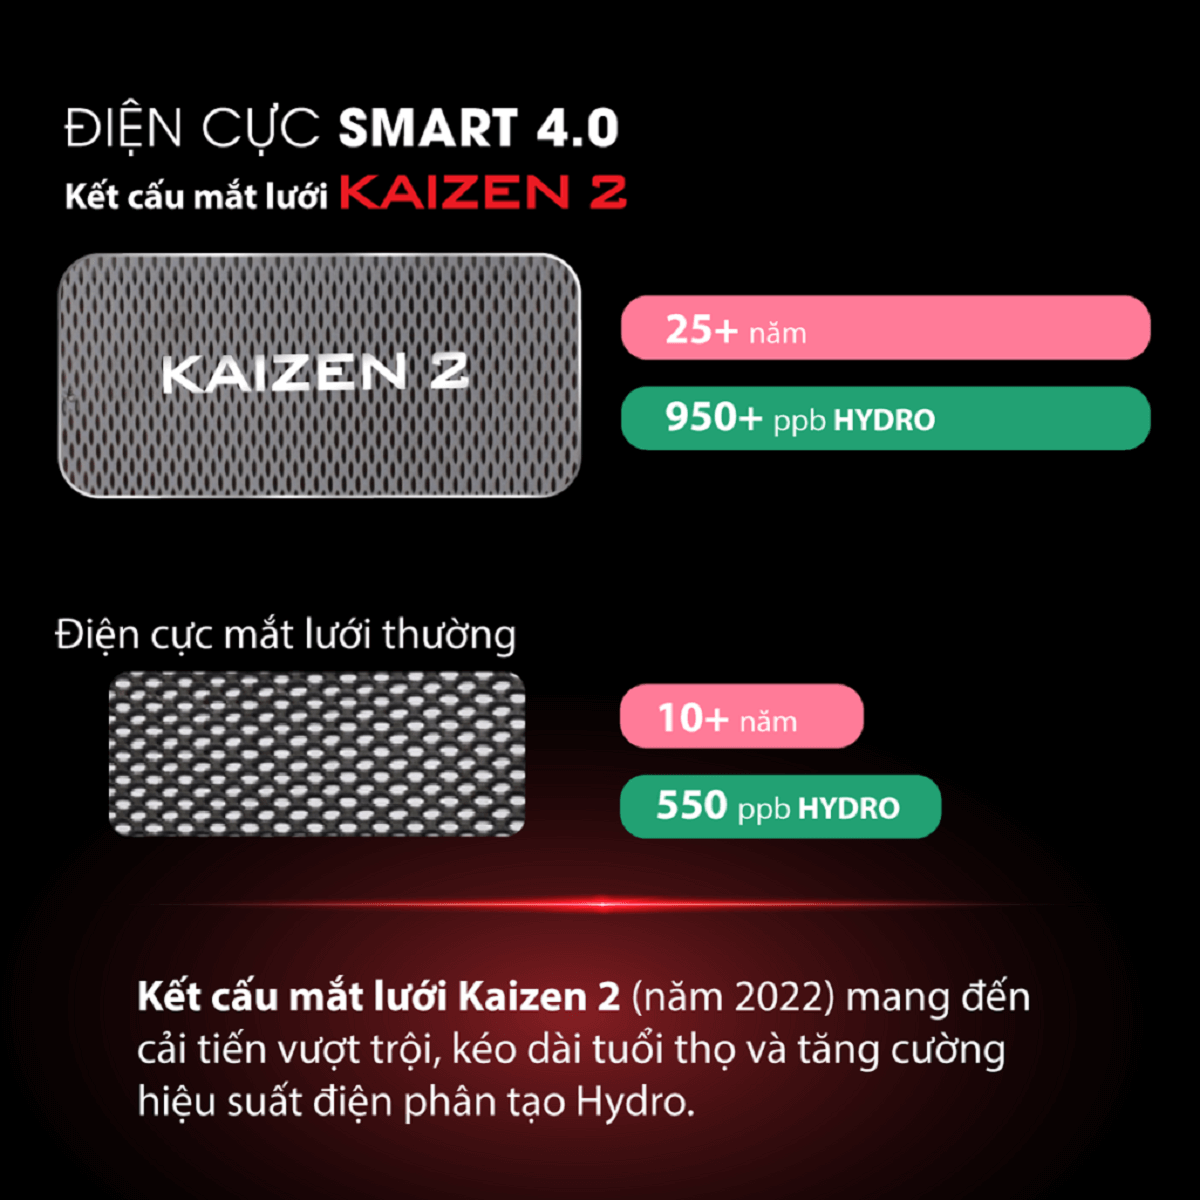 Điện cực mắt lưới Kaizen 2 của máy điện giải Fuji Smart U60 có tốt không?